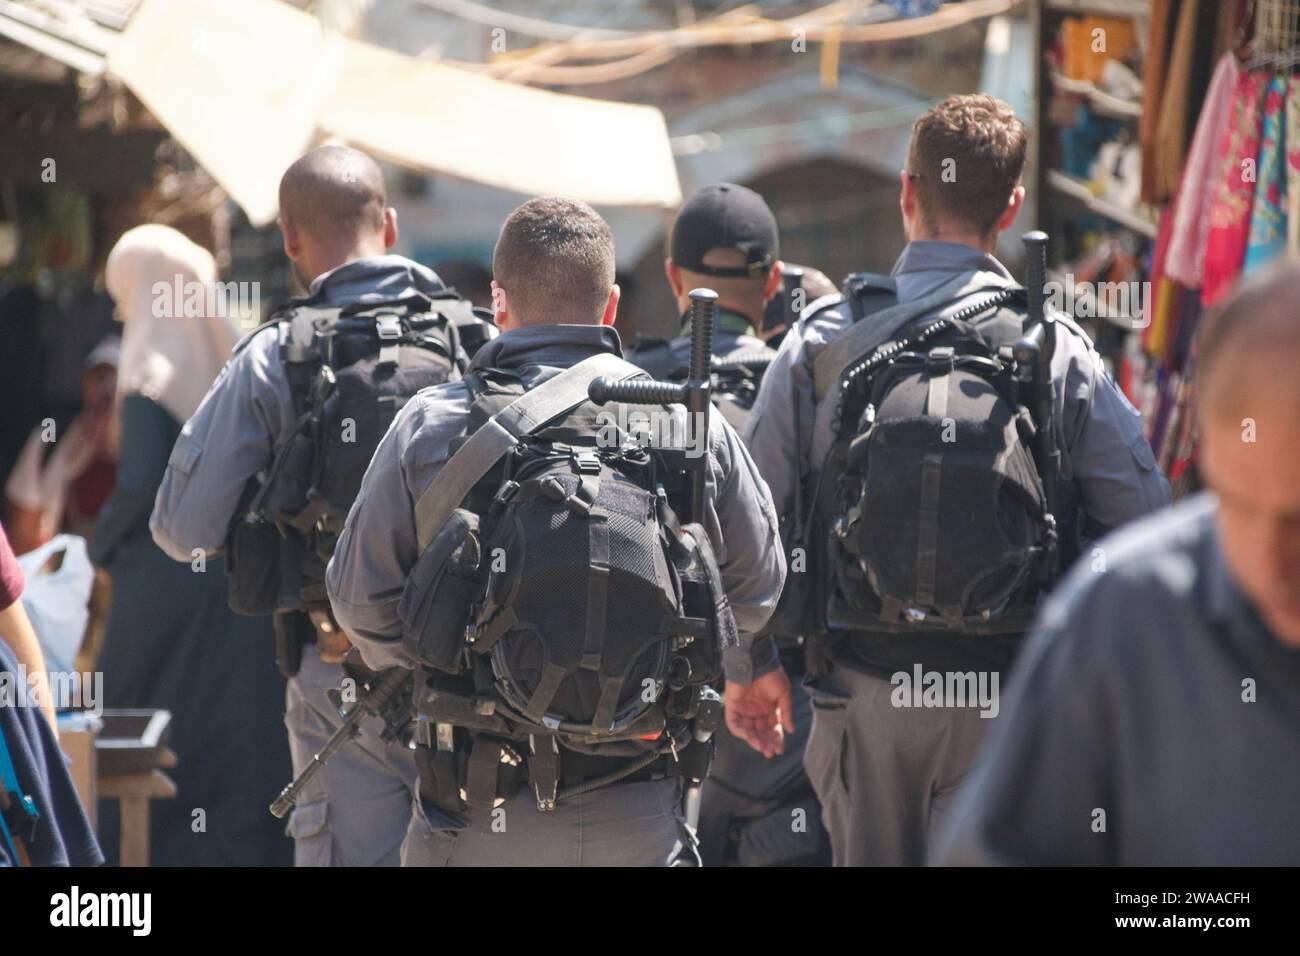 Le forze di sicurezza israeliane pattugliano le strade storiche della città Vecchia di Tel-Aviv, garantendo sicurezza e ordine. Foto Stock